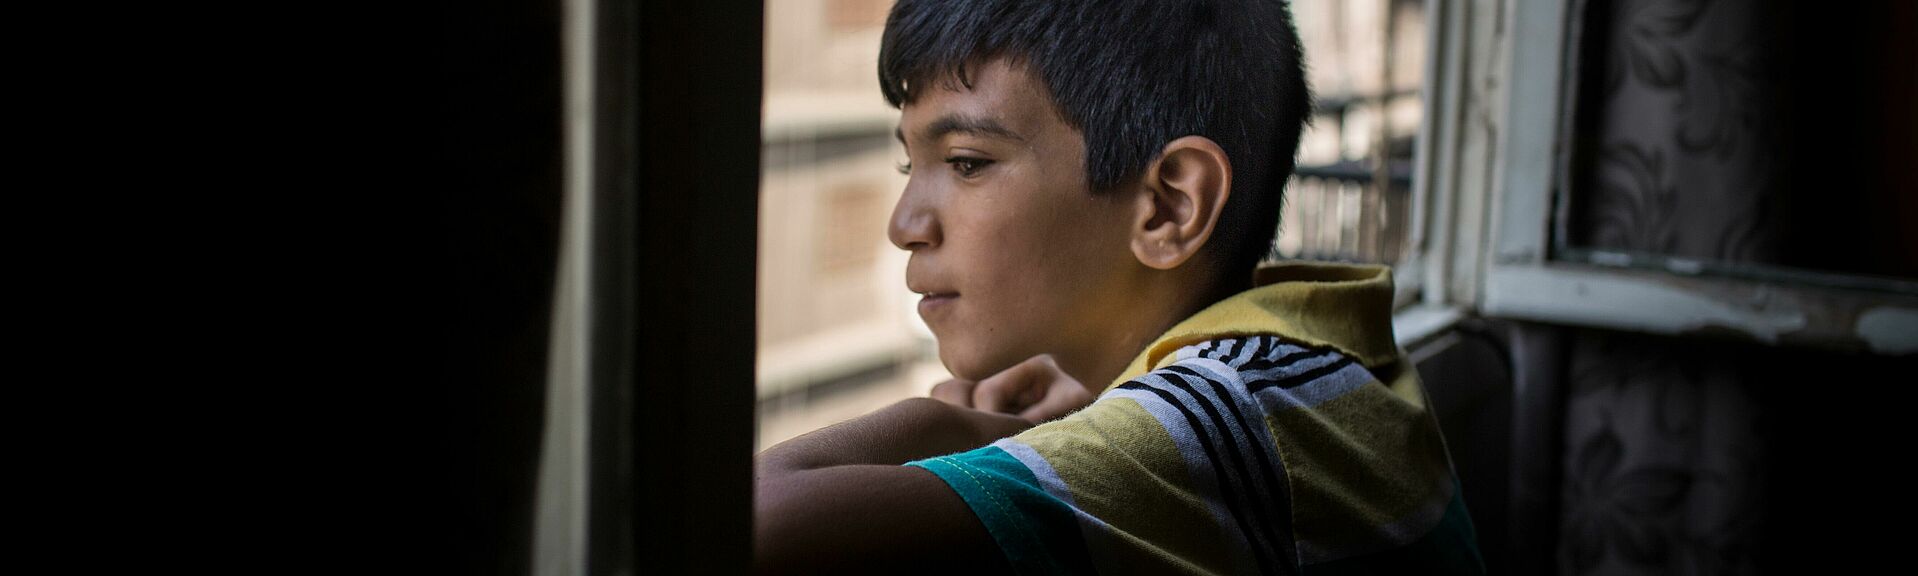 Junge schaut aus Fenster in Beirut